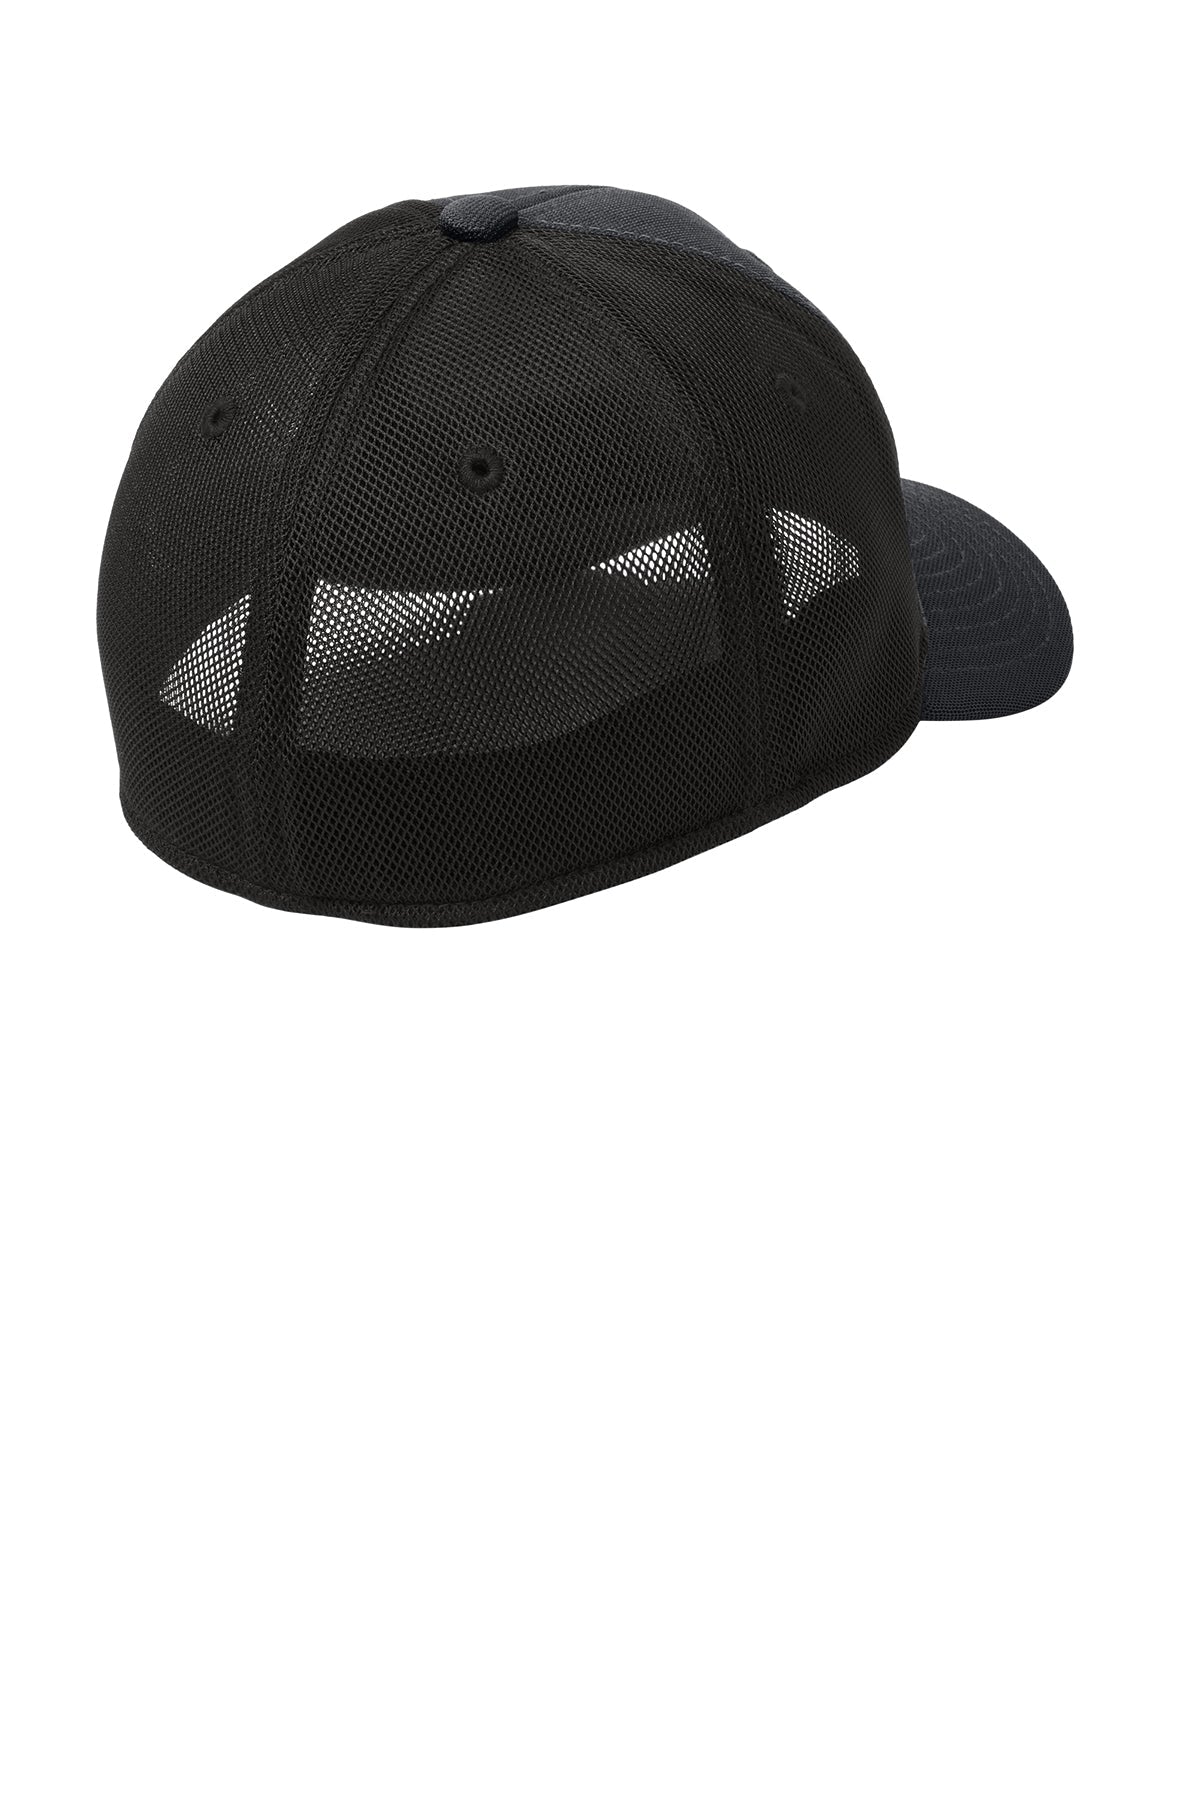 Port Authority Pique Mesh Customized Caps, Black/ Black